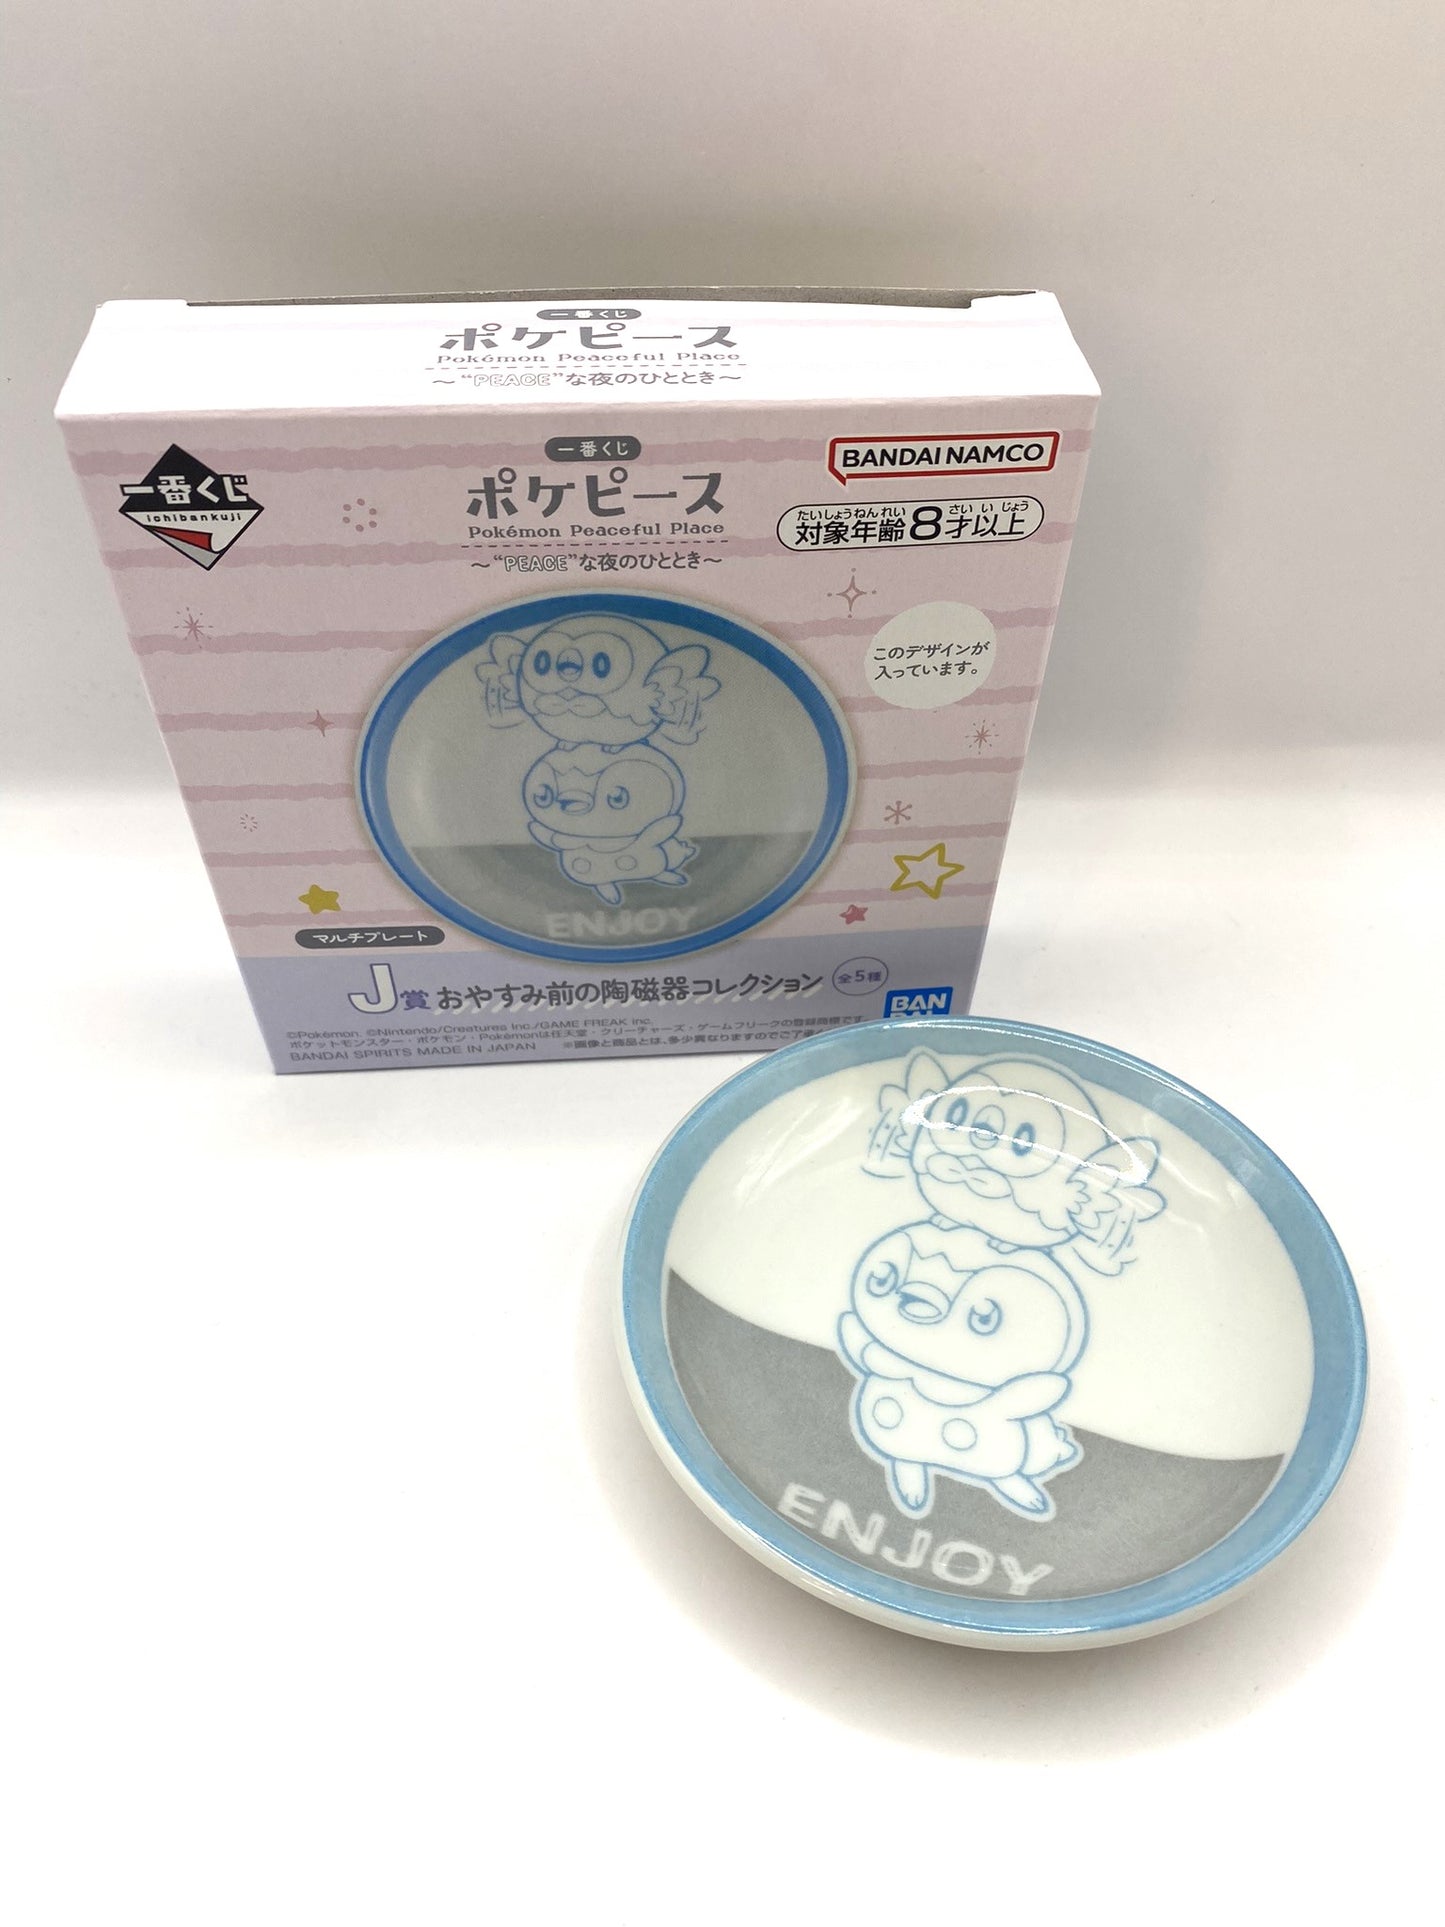 Pokemon Peaceful Place Small Plate / Trinket Dish Bandai Prize Lottery